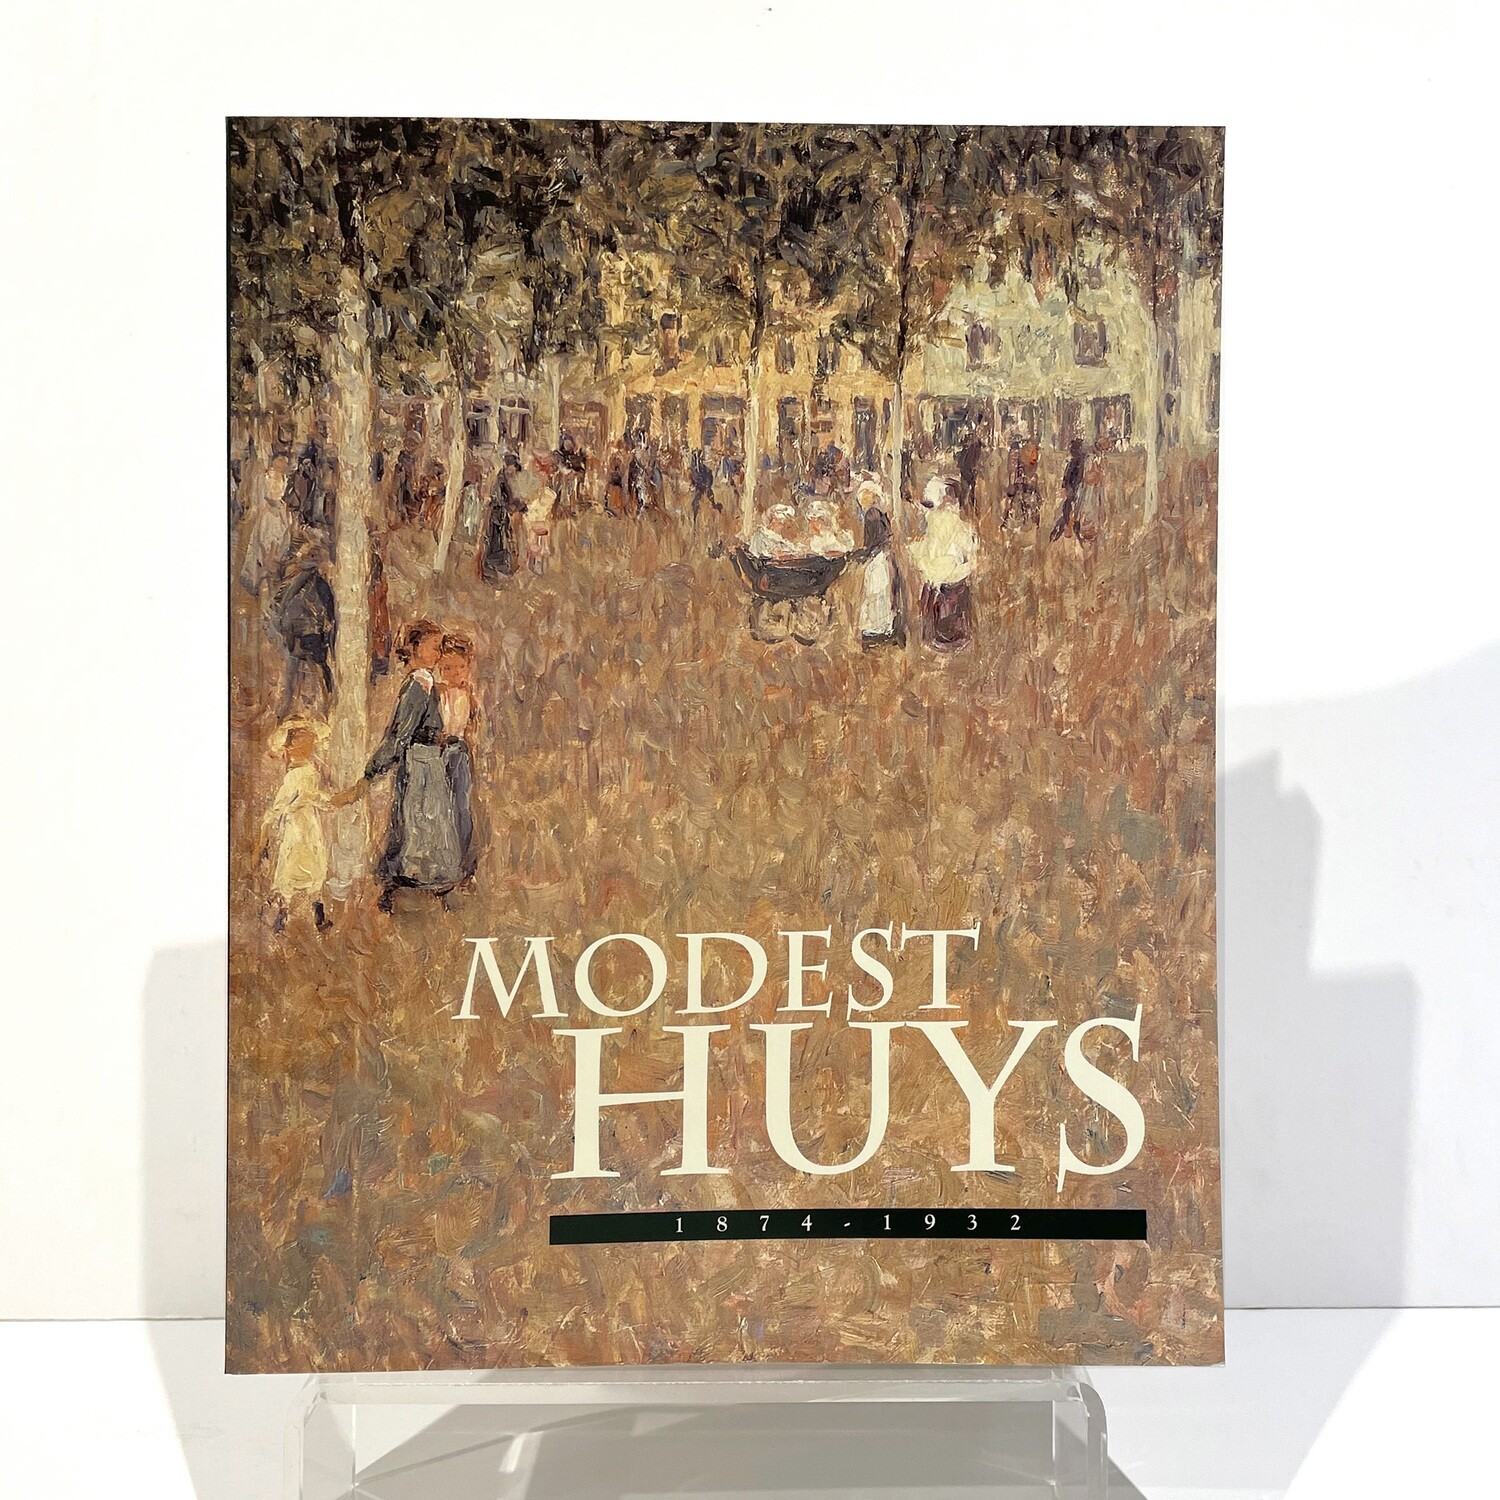 Modest Huys 1874-1932 – Johan De smet en Veerle Van Doorne, Antwerpen, 1999